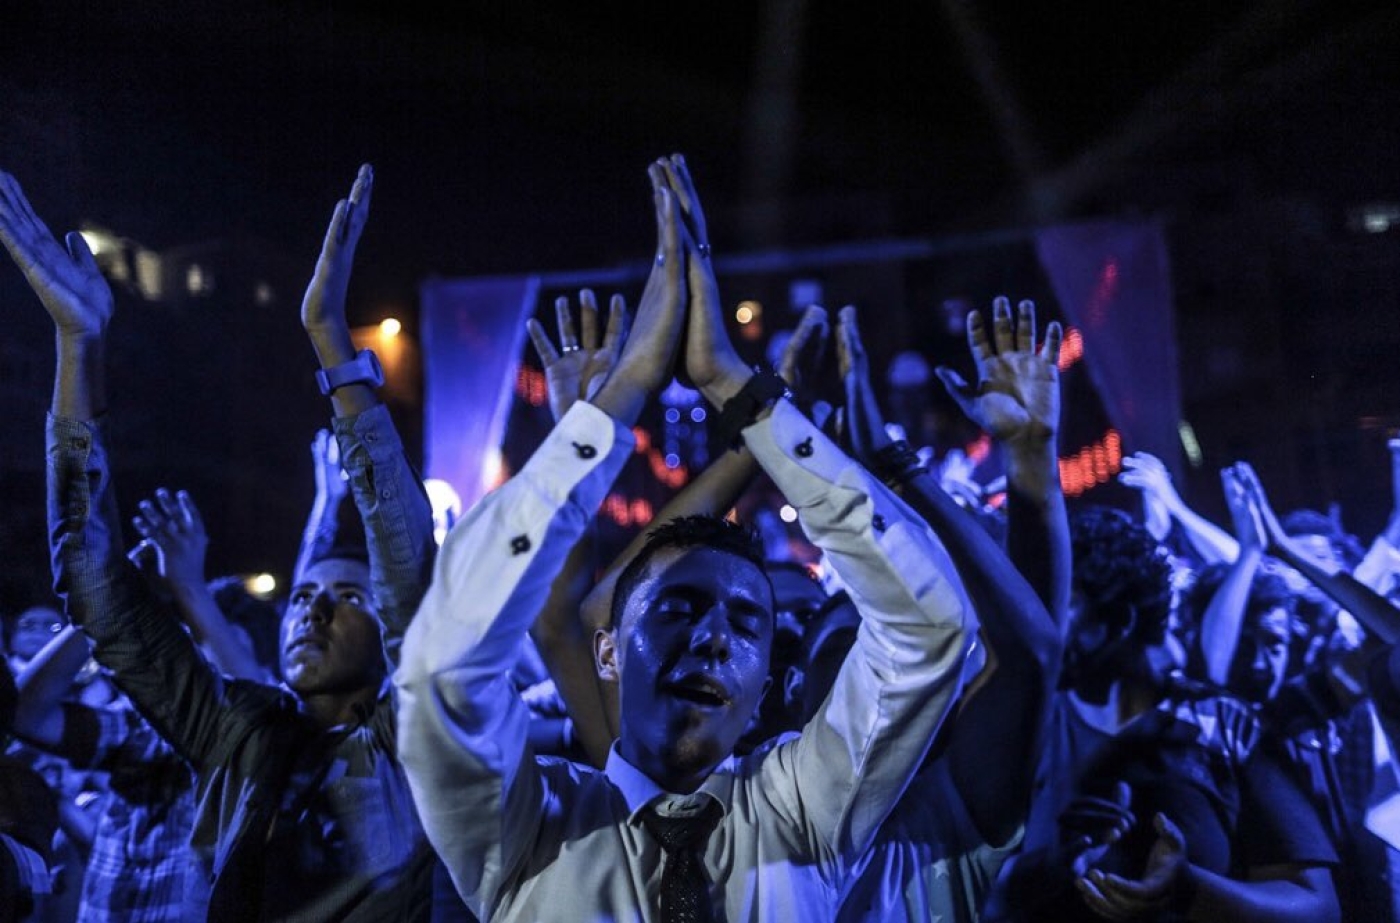 Les mahraganate (festivals) aussi connus sous le nom d’« électro-chaâbi » sont devenus le style musical le plus écouté en Égypte (Twitter)